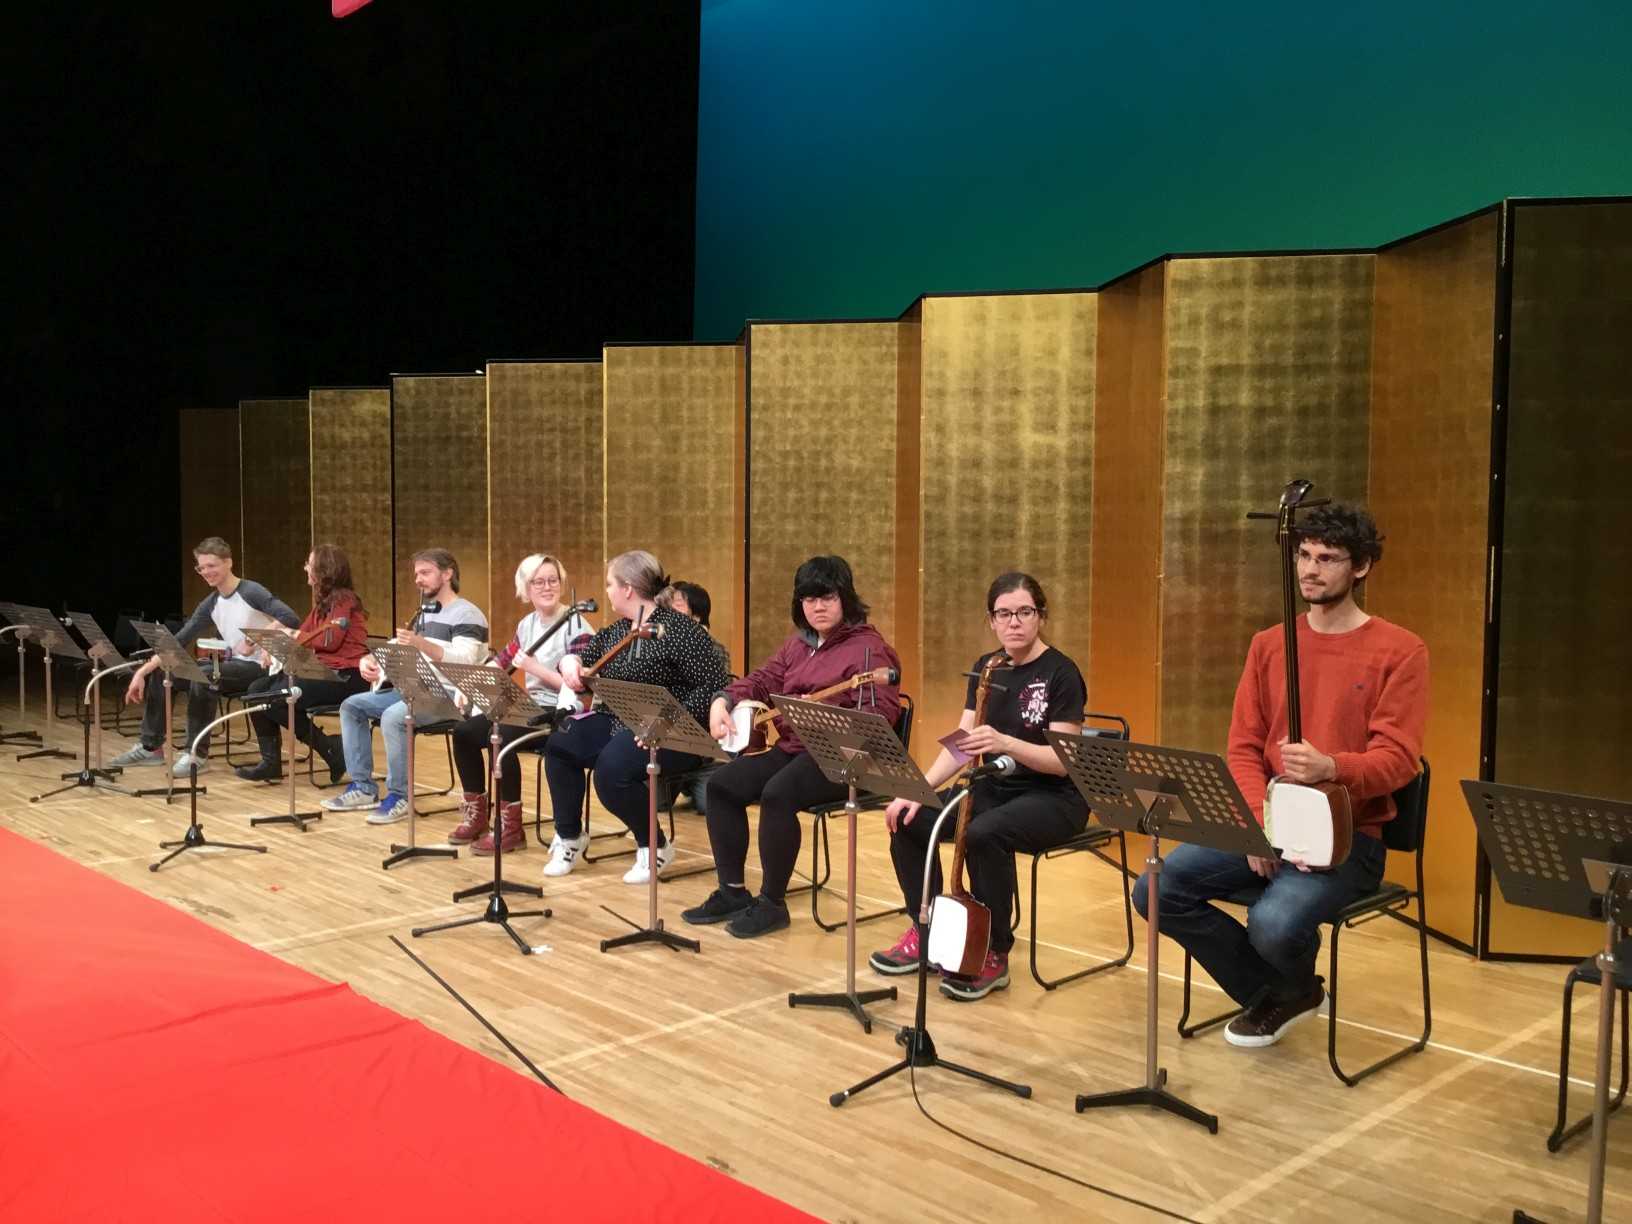 Rehersal for the MIFA festival shamisen concert 2018.